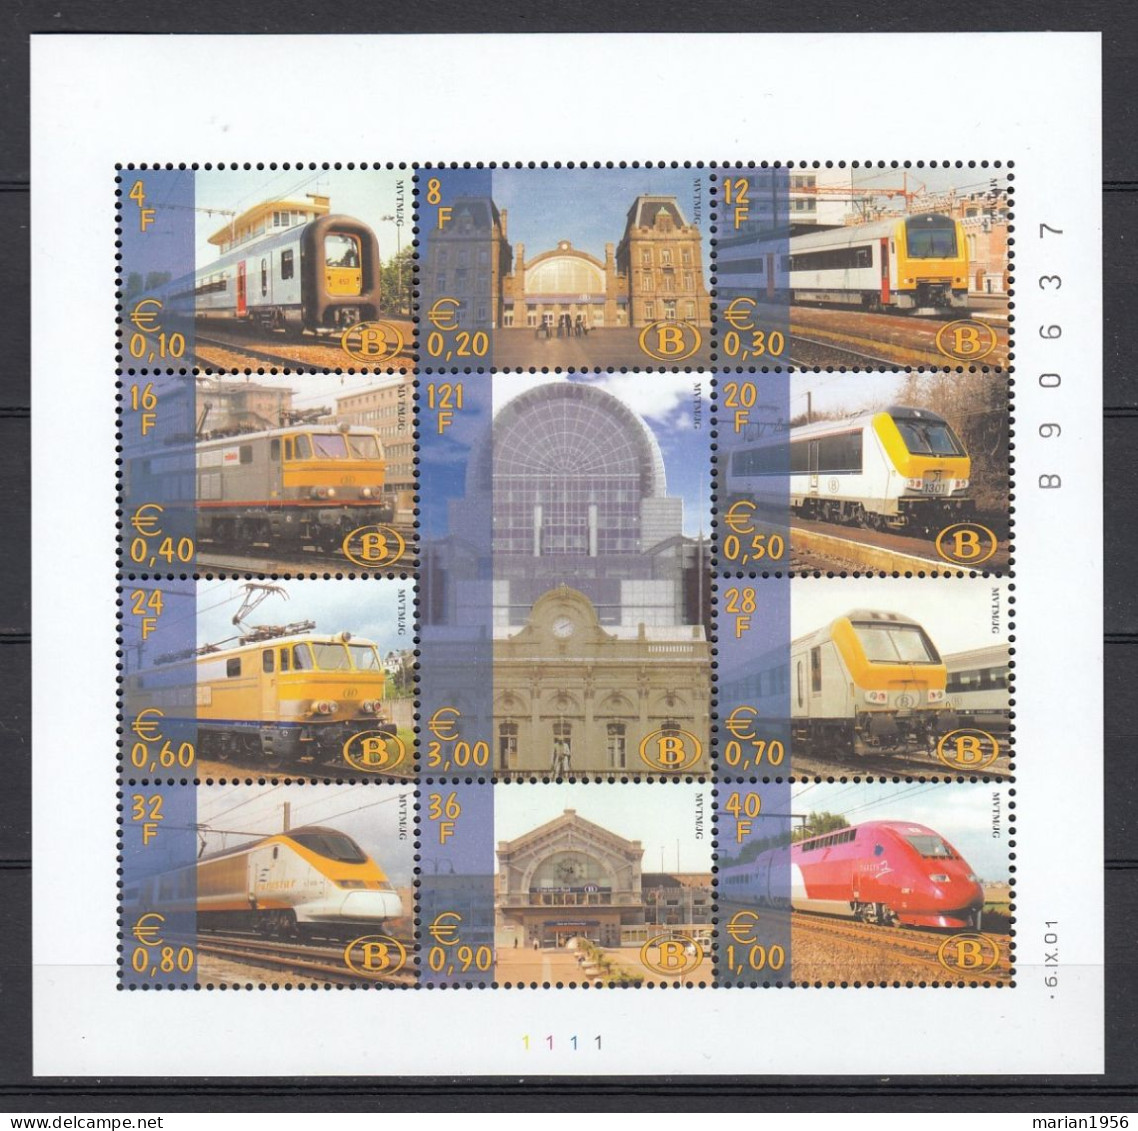 Belgique 2001 - TRAINS - Facial 8,20 Eur. - MNH - Trains